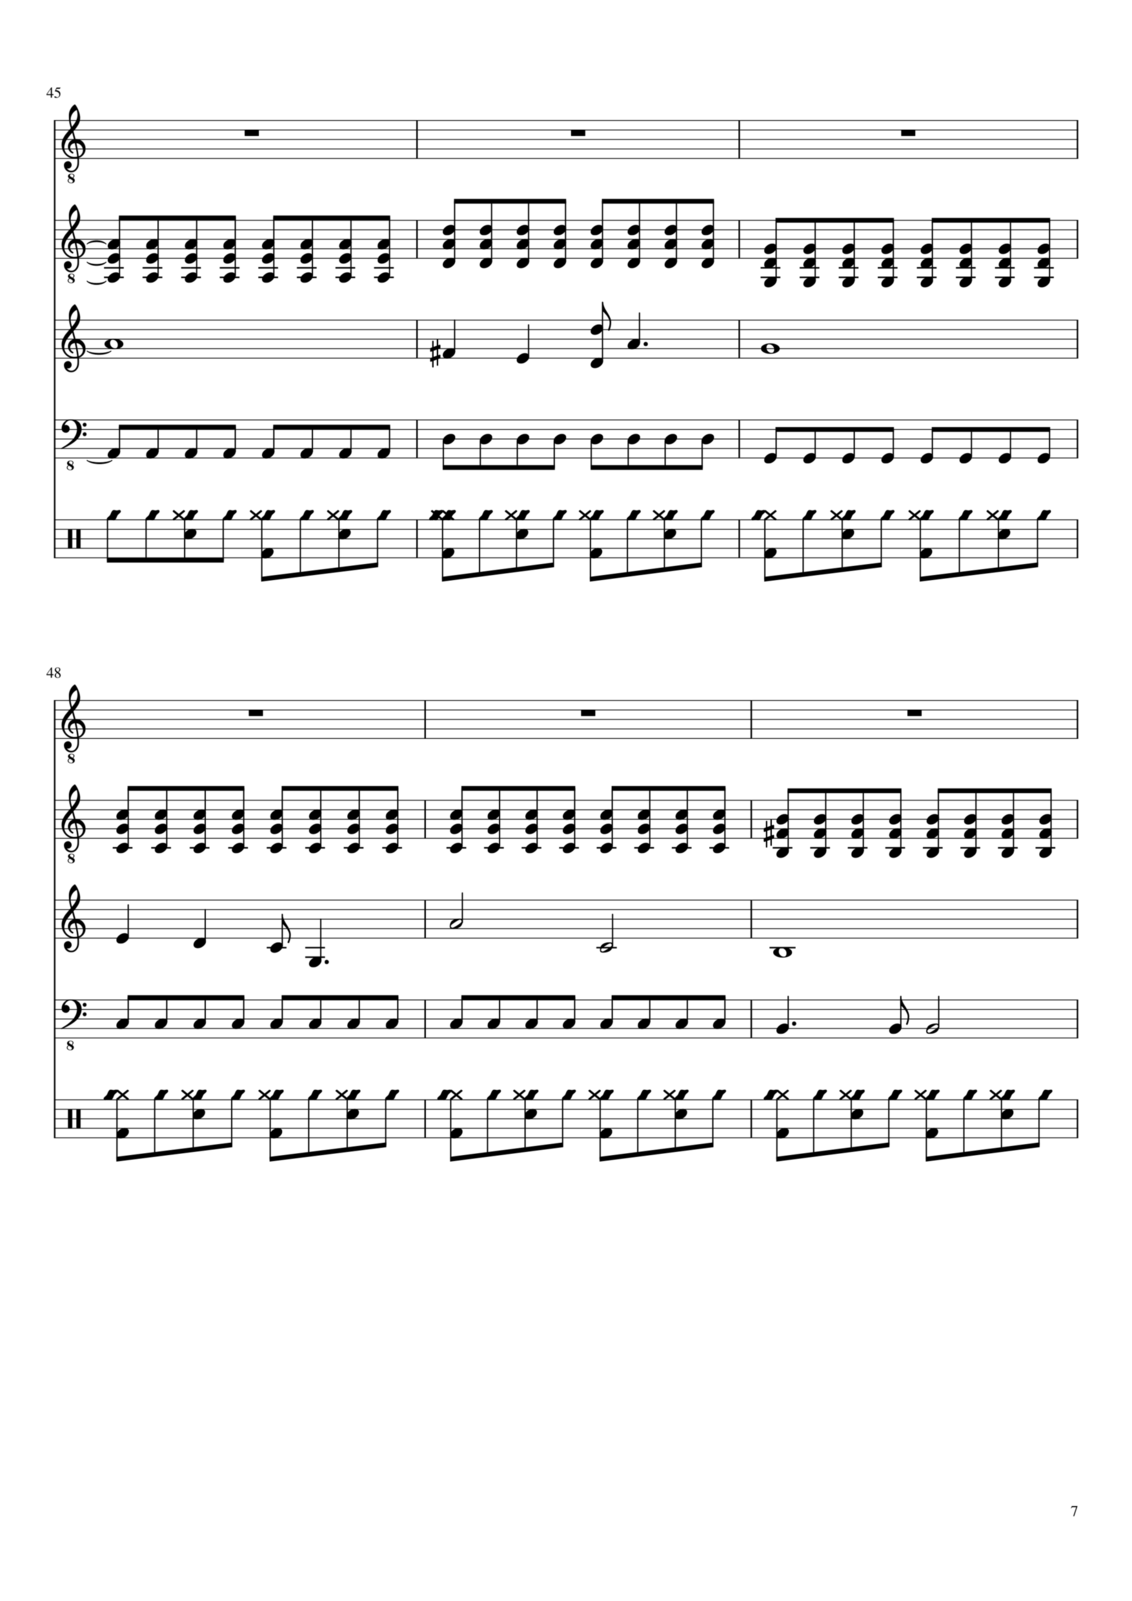 Vospominaniya o byiloy lyubvi slide, Image 7